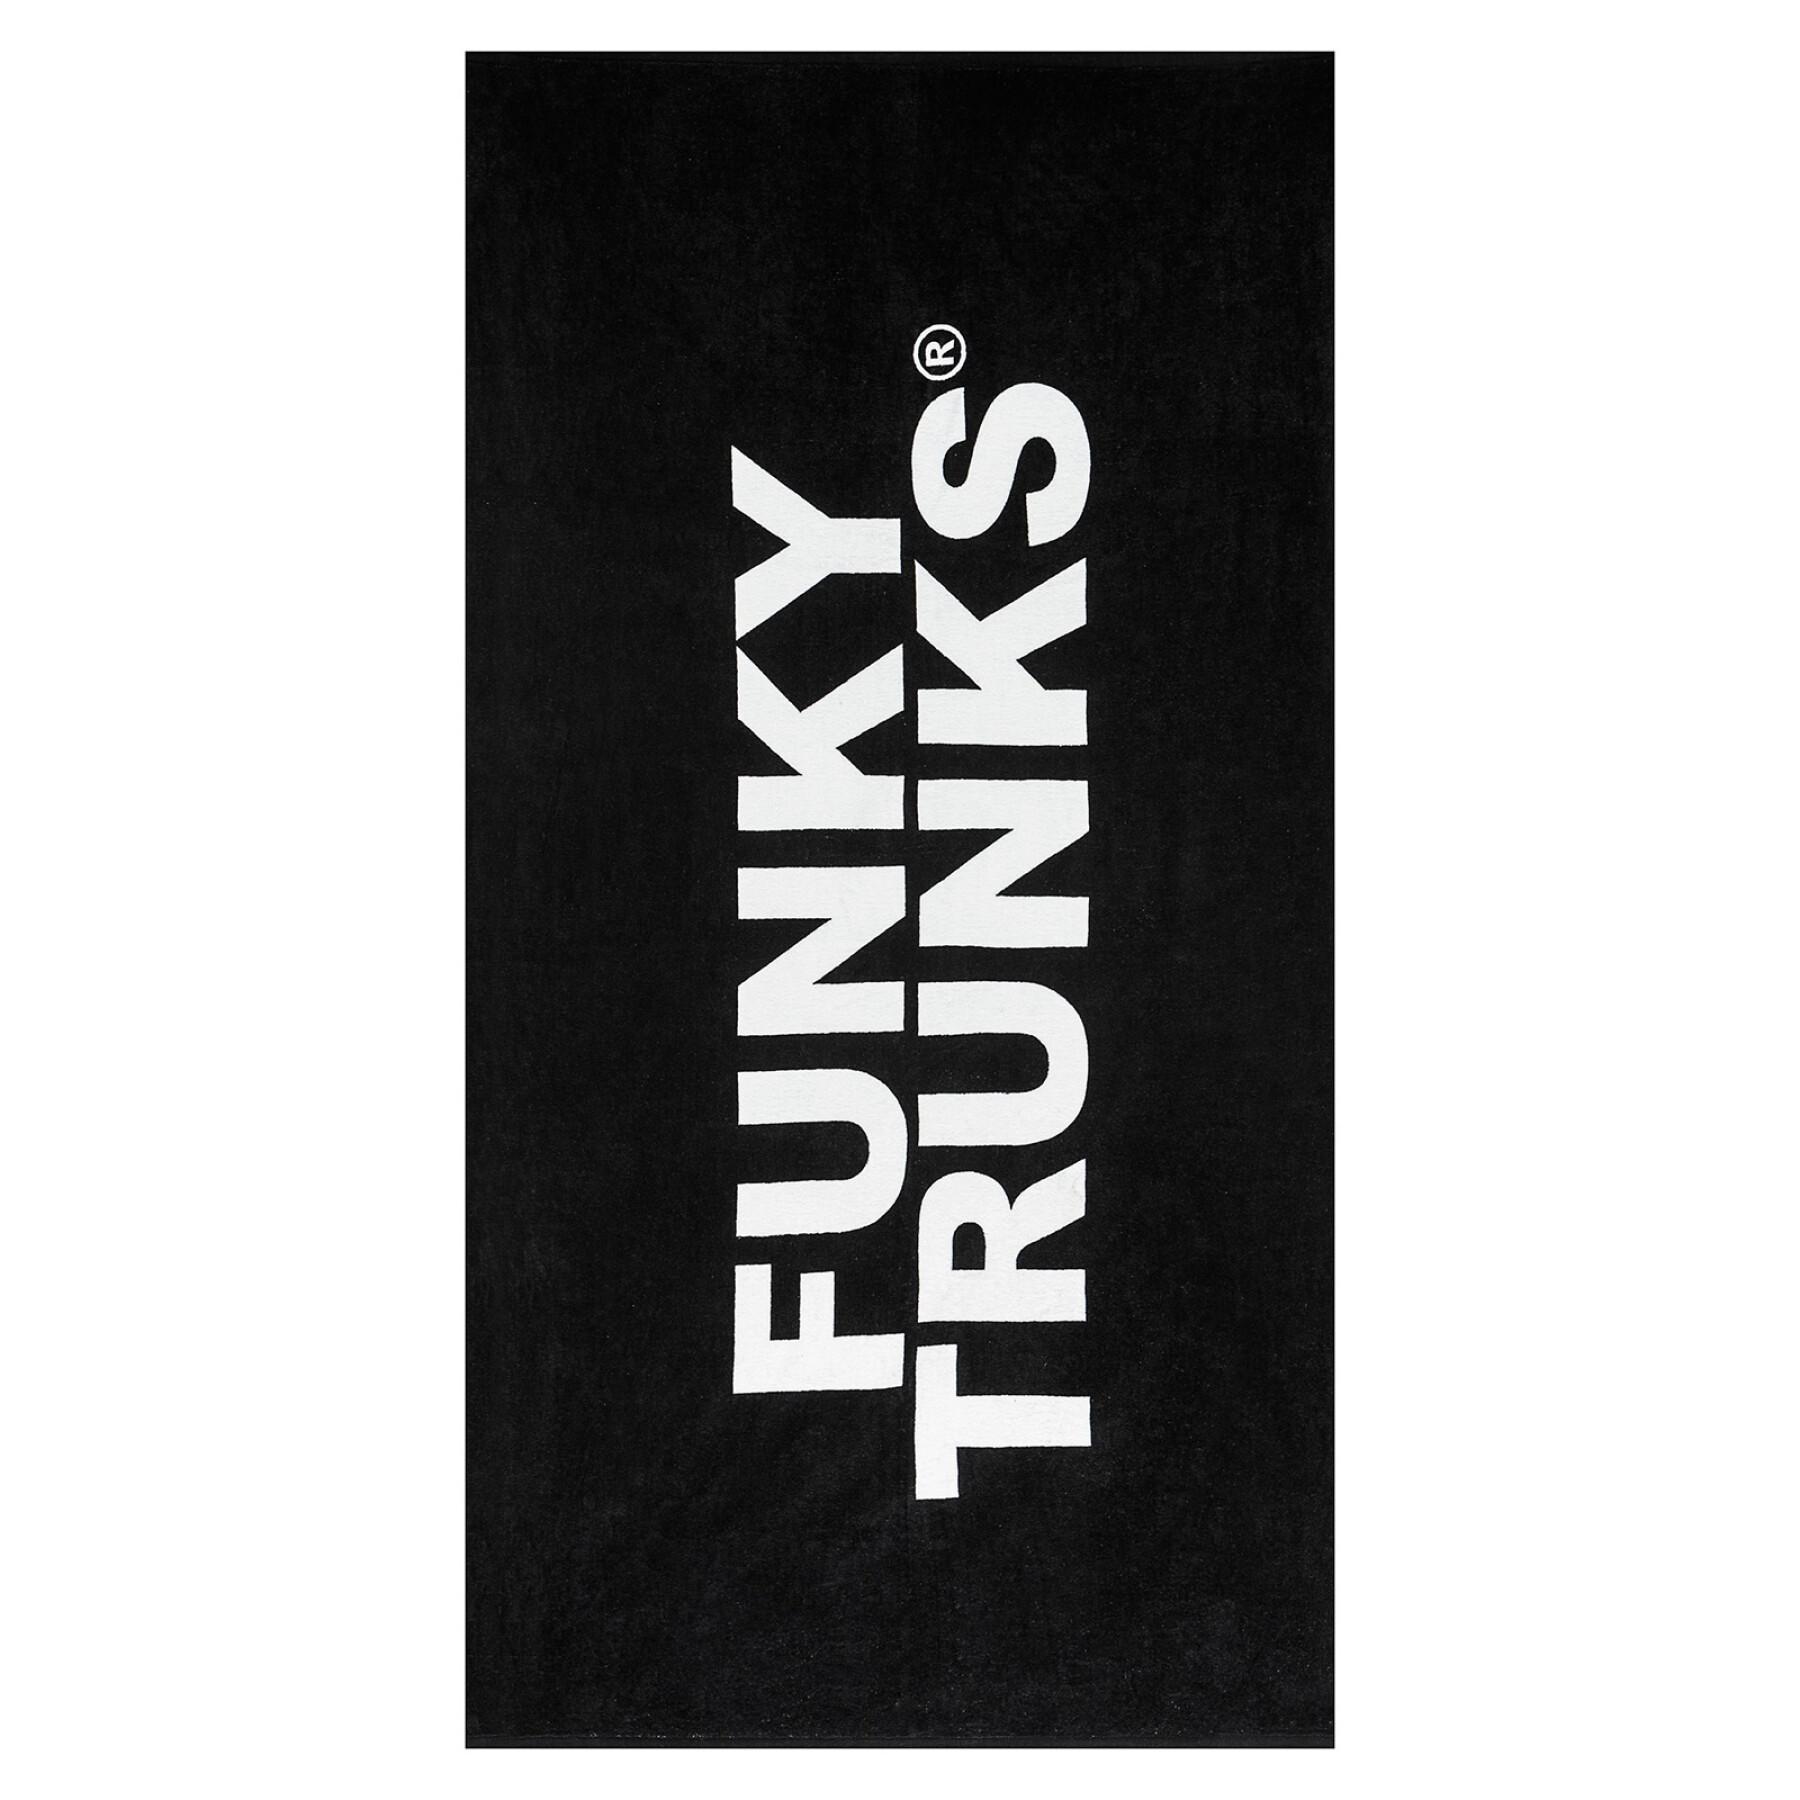 Handduk Funky Trunks